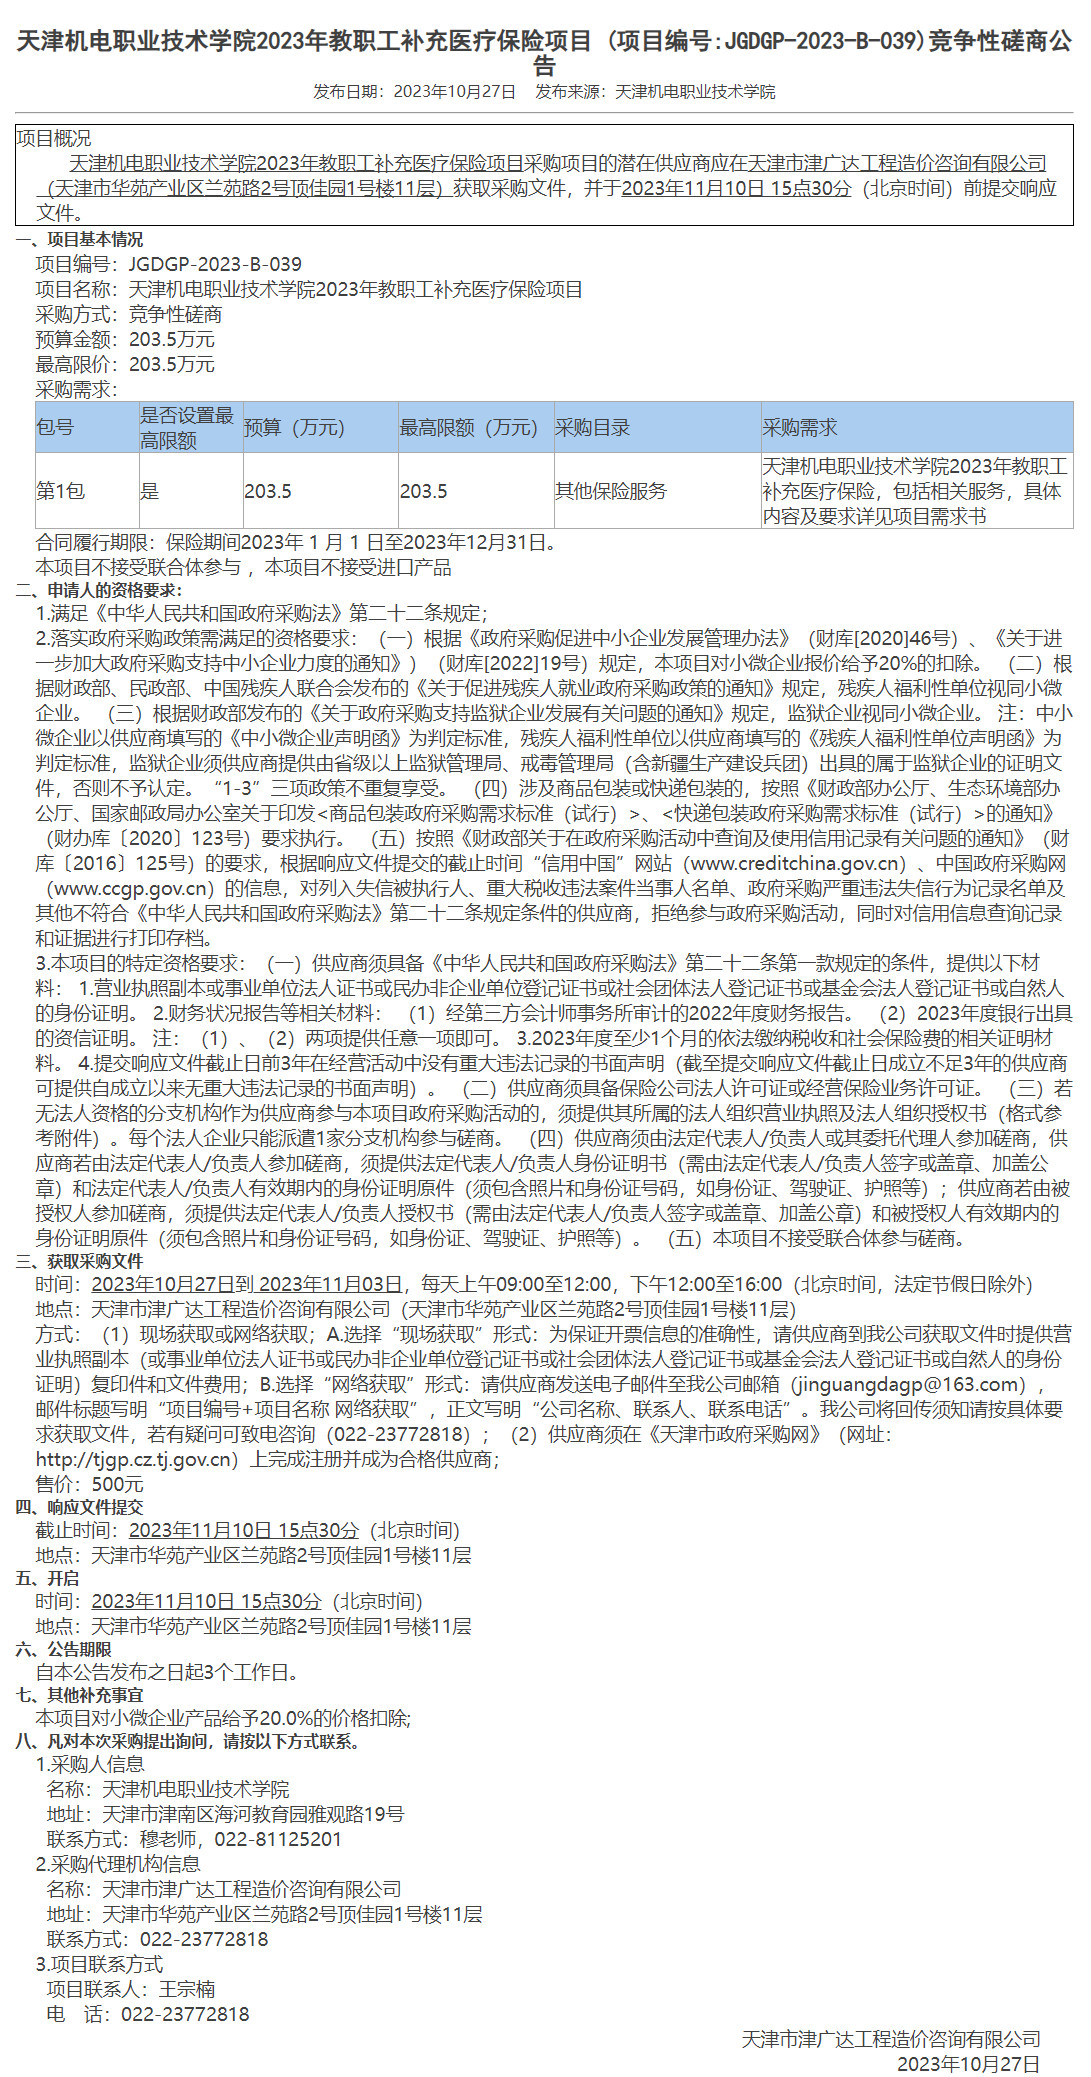  天津机电职业技术学院2023年教职工补充医疗保险项目(图1)